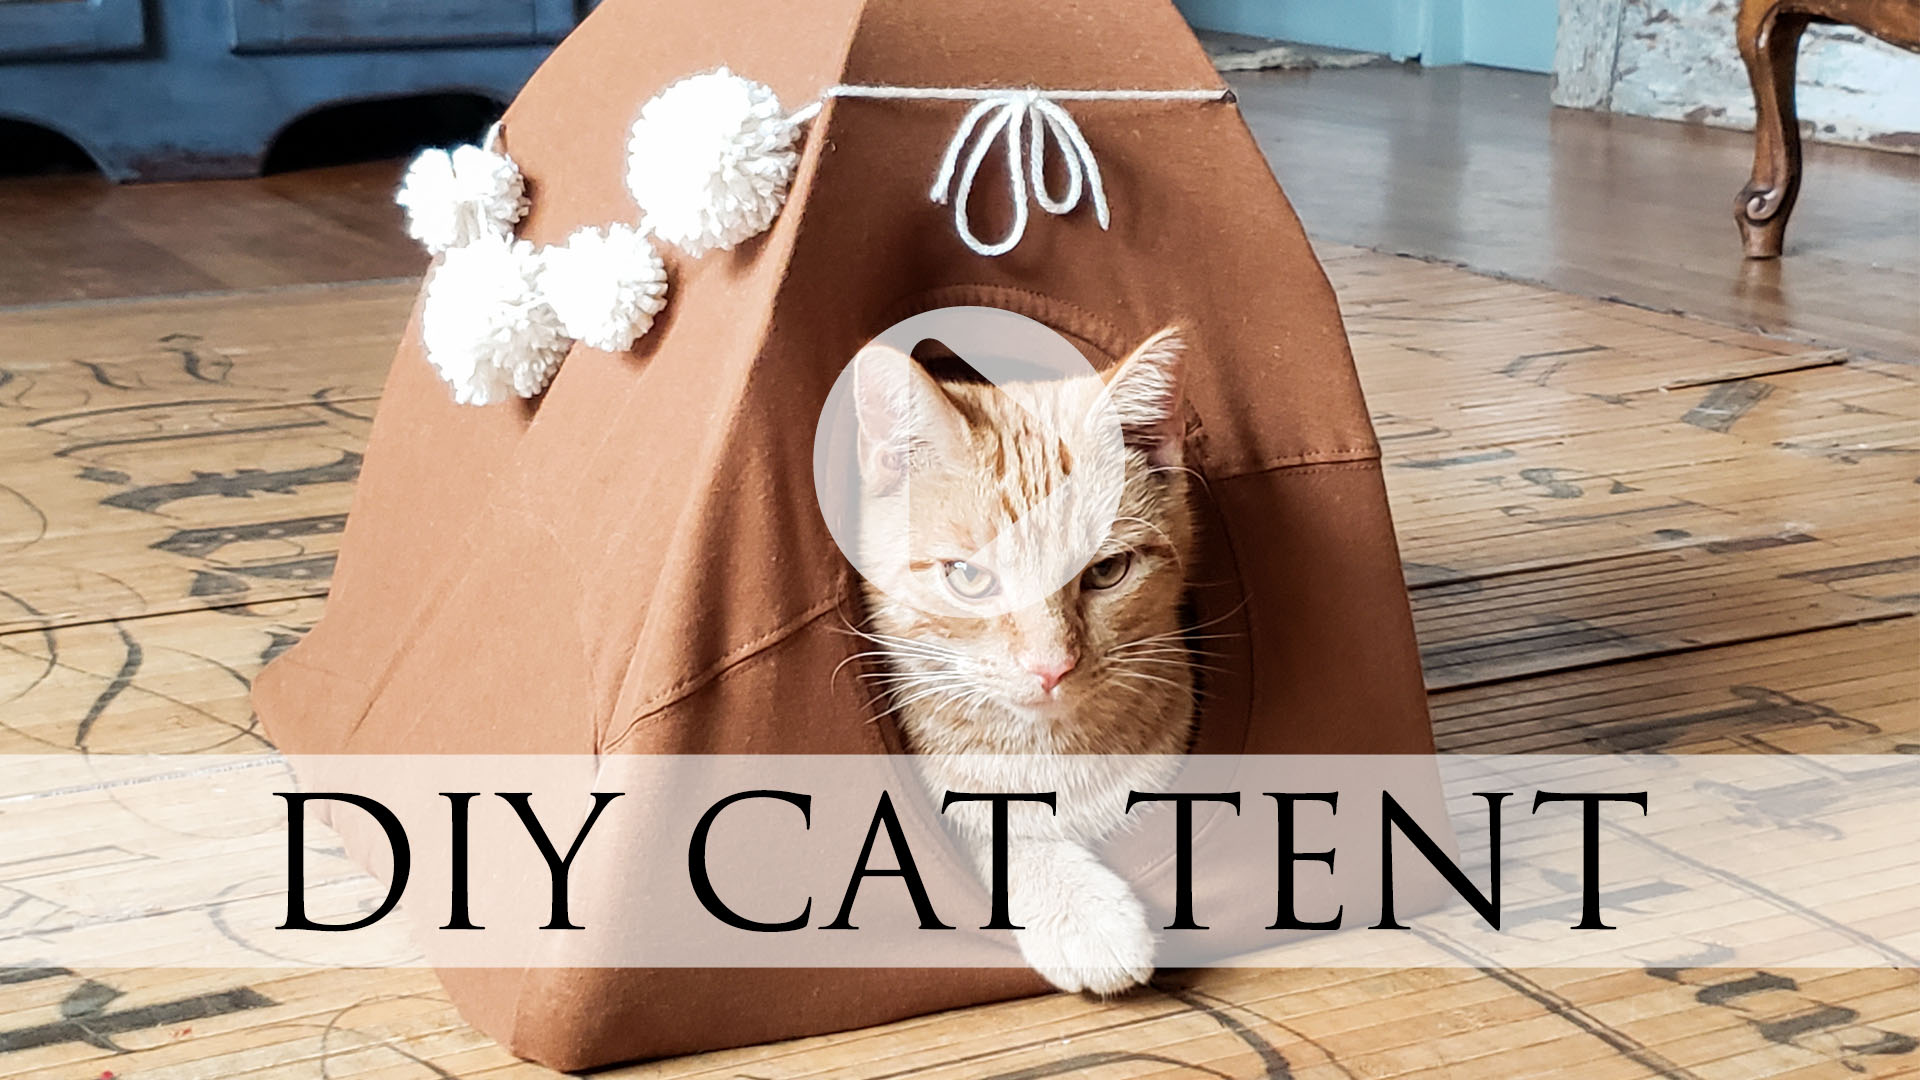 Blog Video DIY Cat Tent Tutorial by Larissa of Prodigal Pieces | prodigalpieces.com #prodigalpieces